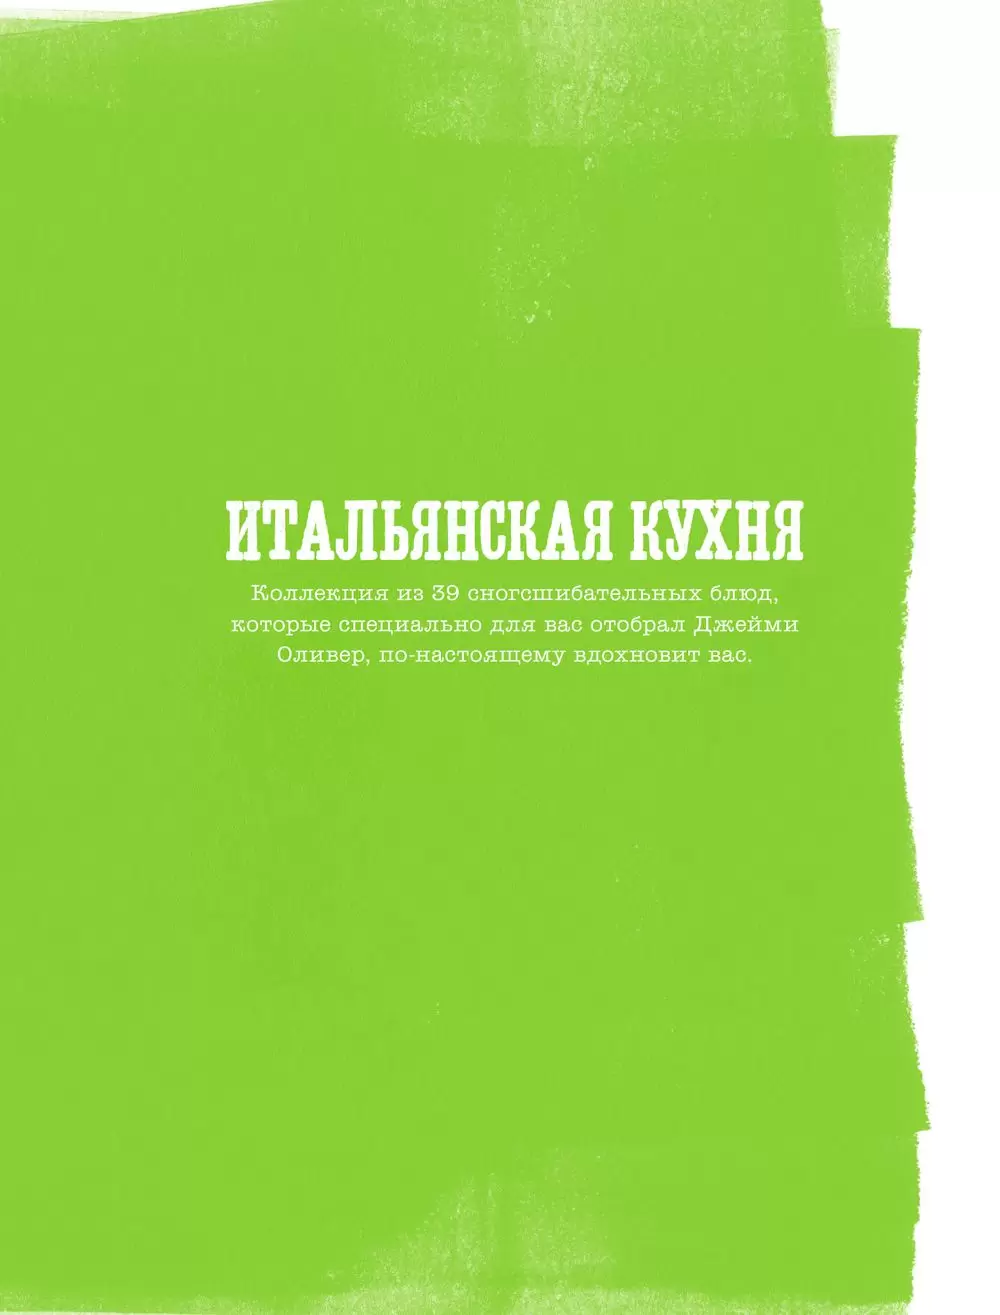 Книги Джейми Оливера купить в Киеве, Украине с доставкой цена